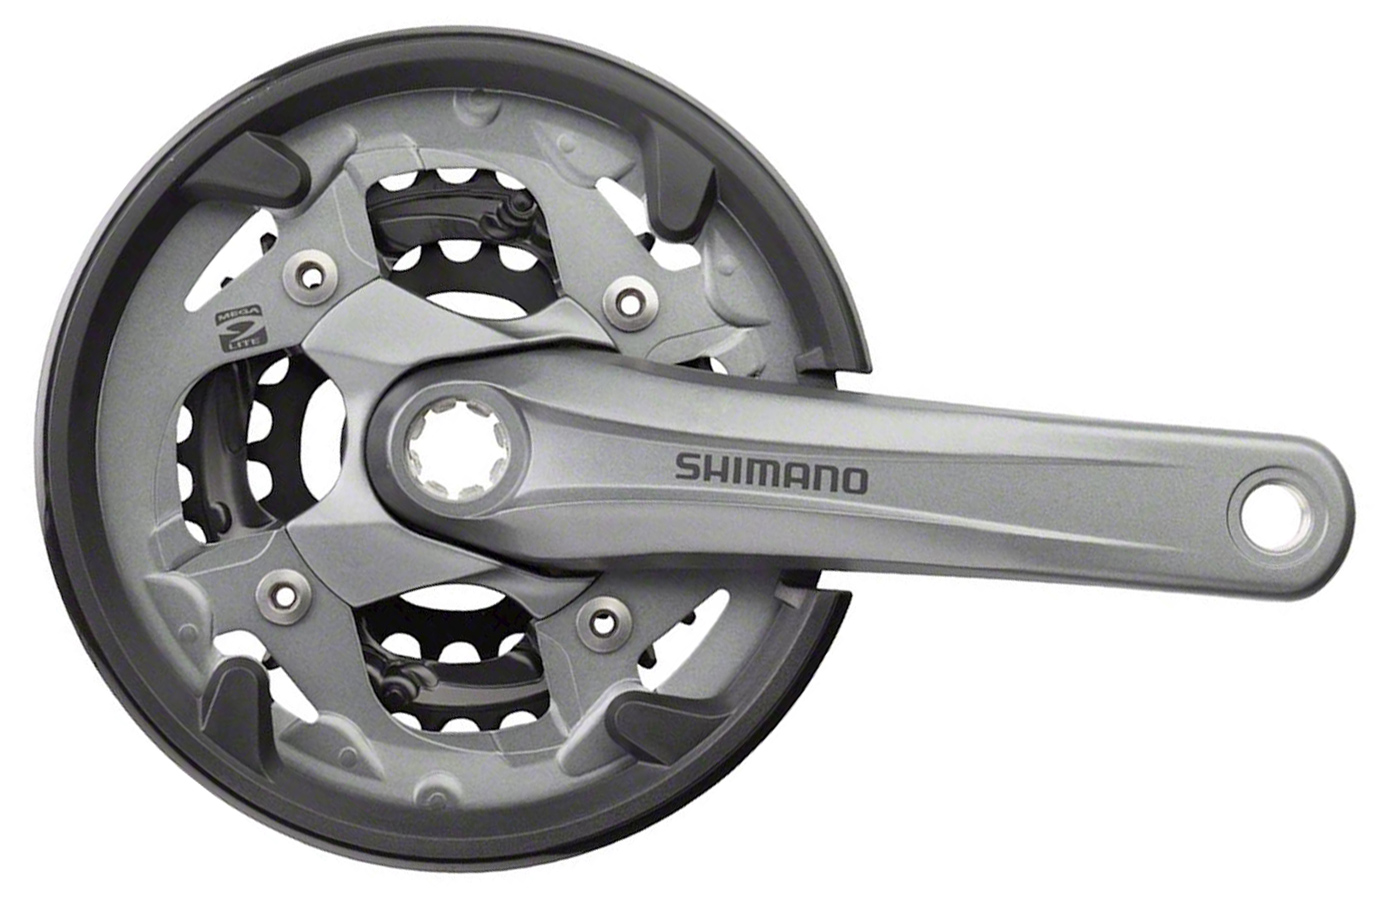  Система для велосипеда Shimano Alivio M4000, 9ск., 175мм (EFCM4000E002C)